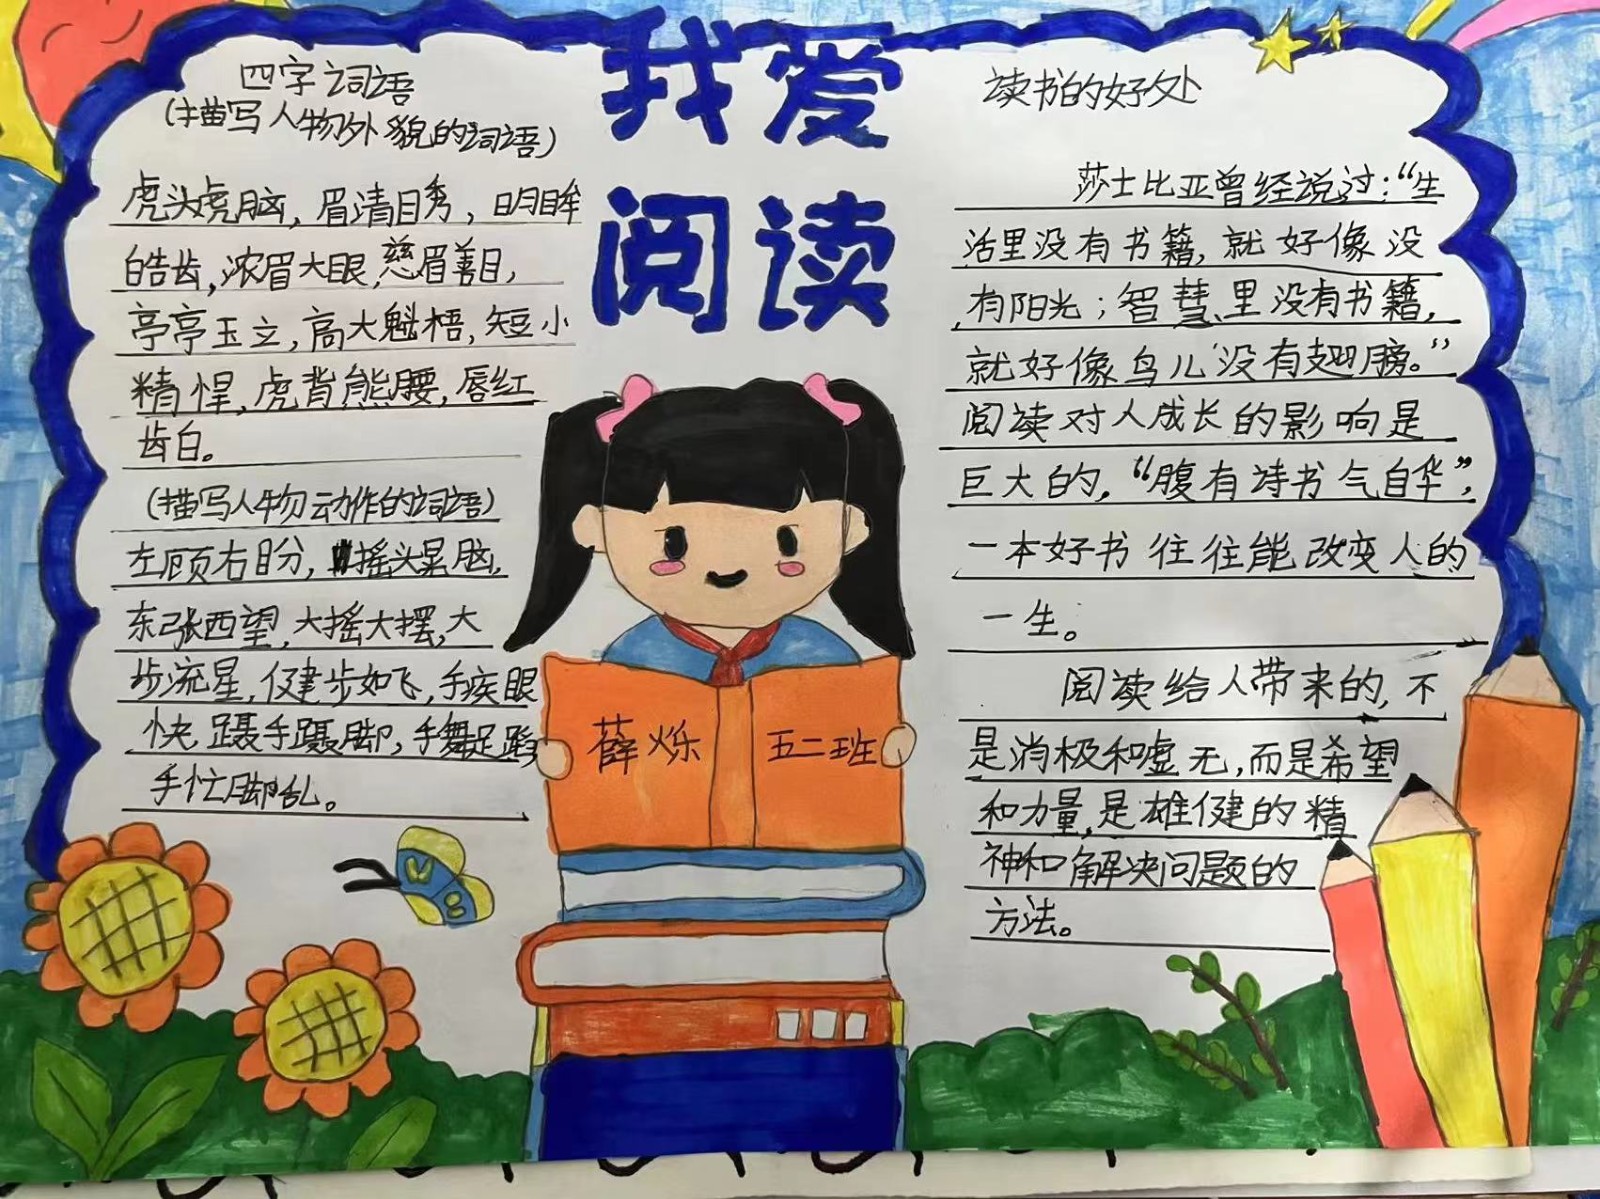 郑州市管城区野曹小学开展阅读手抄报展示活动